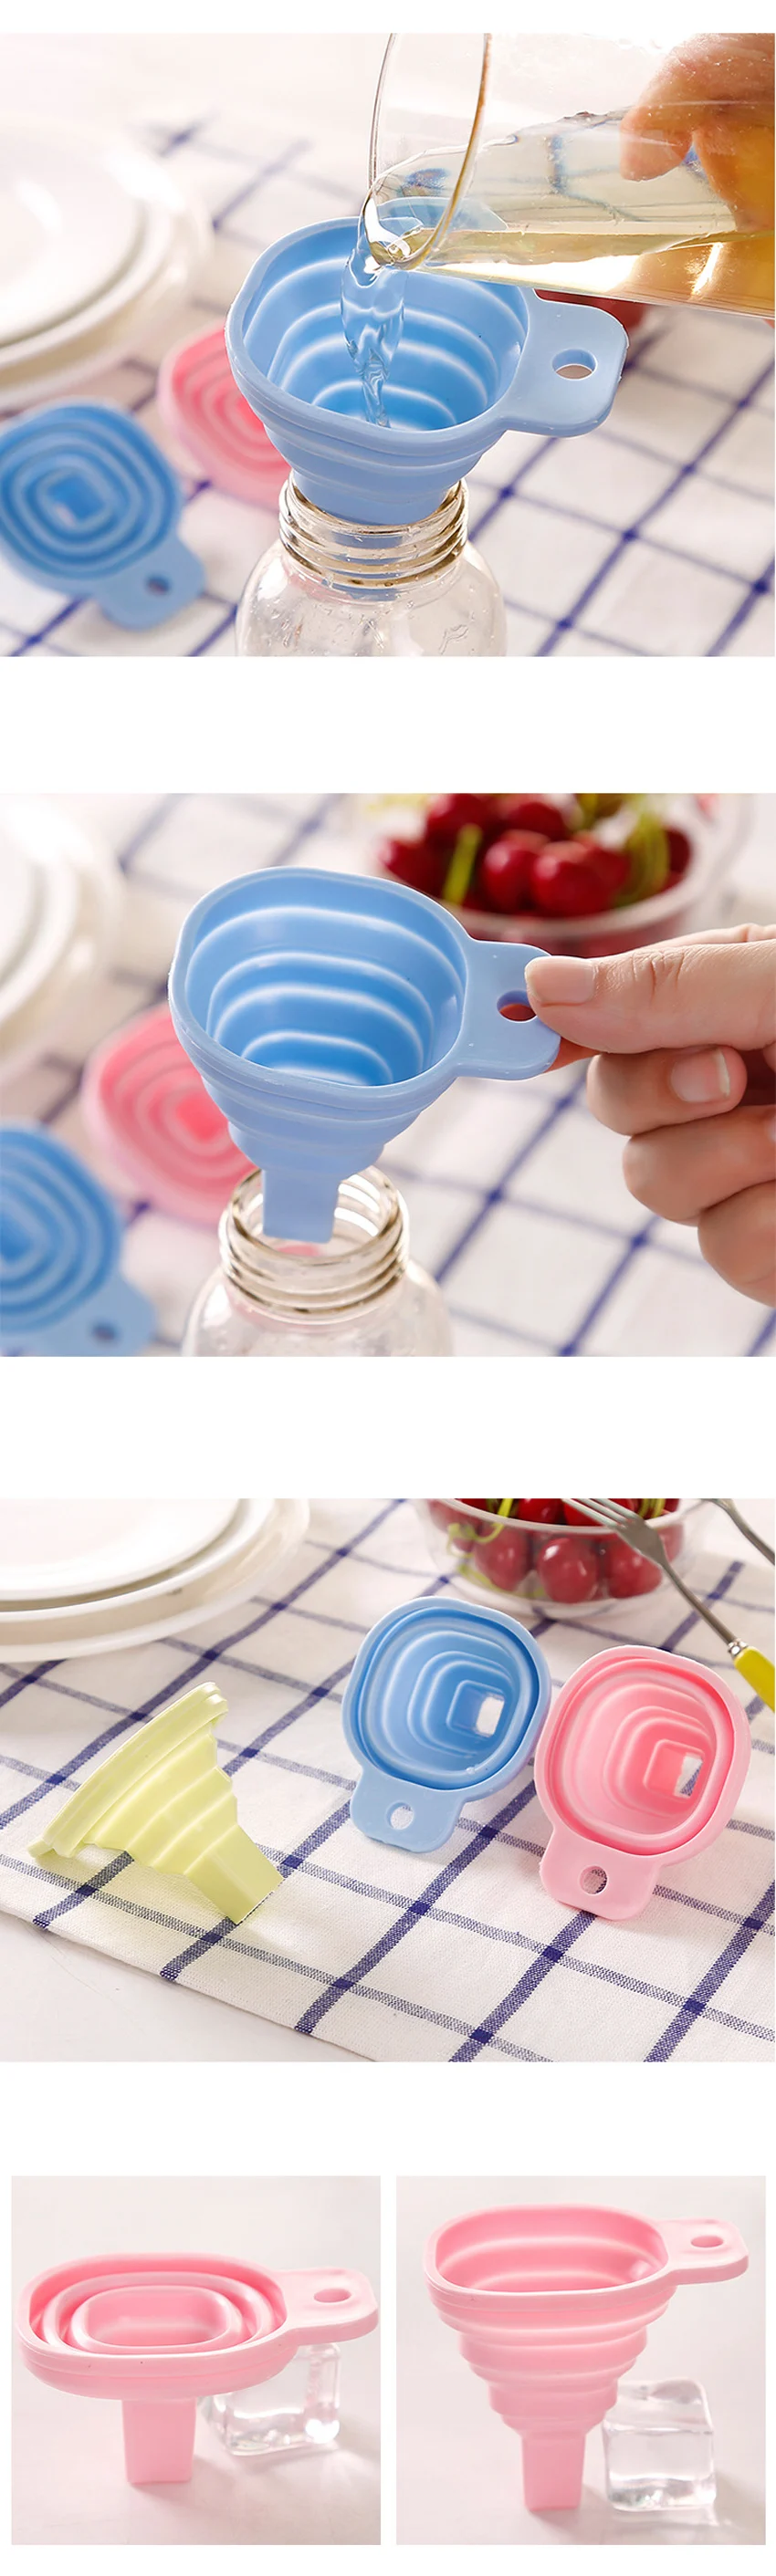 YuryFvna Складная воронка силиконовая пищевая Складная воронка кухонная Воронка для жидкого порошка для переноса бутылки с водой